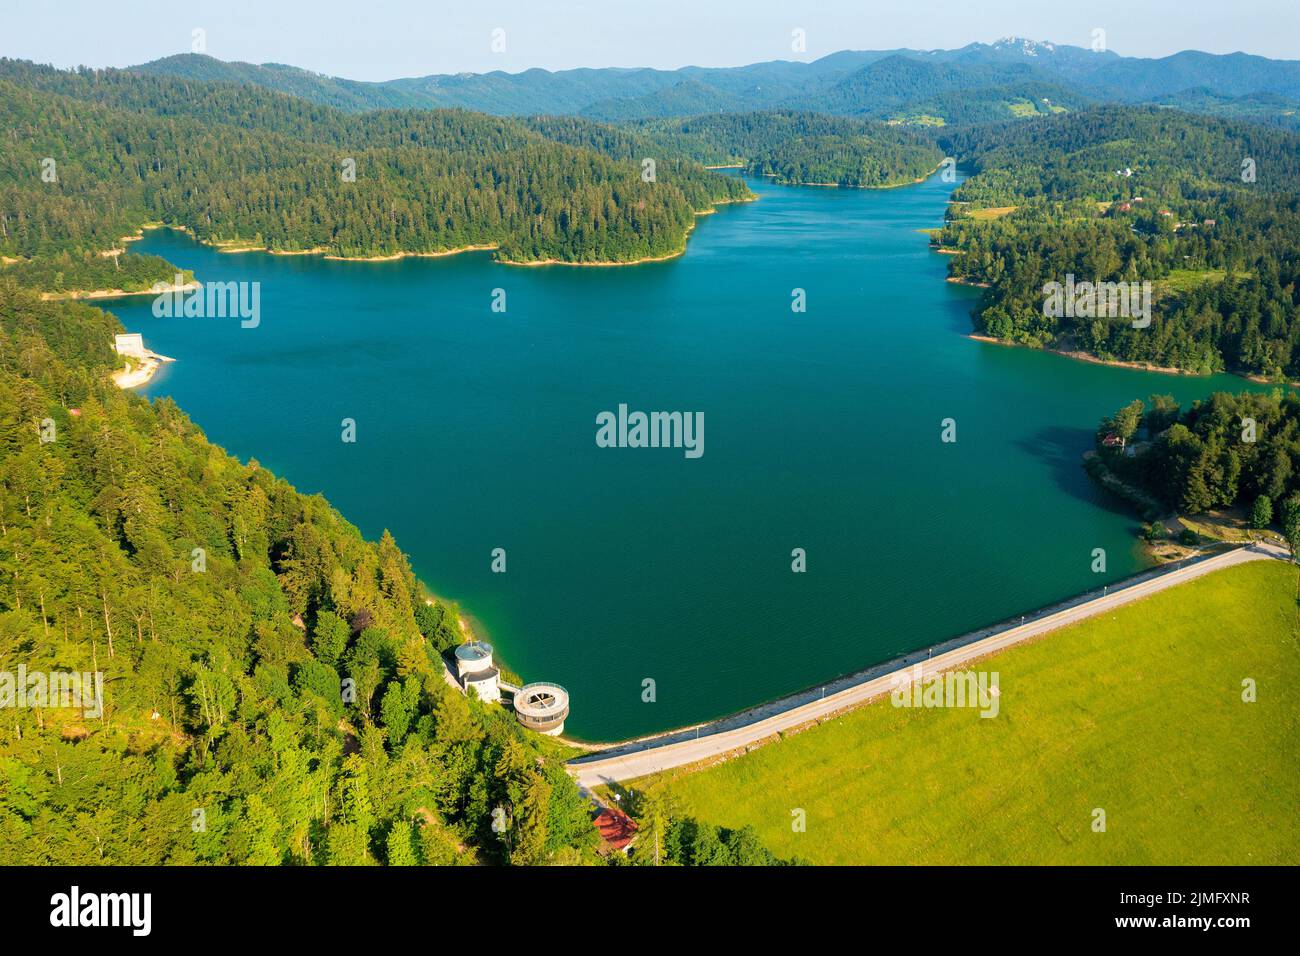 Aerial view of Lokvarsko lake in Gorski kotar, Croatia Stock Photo